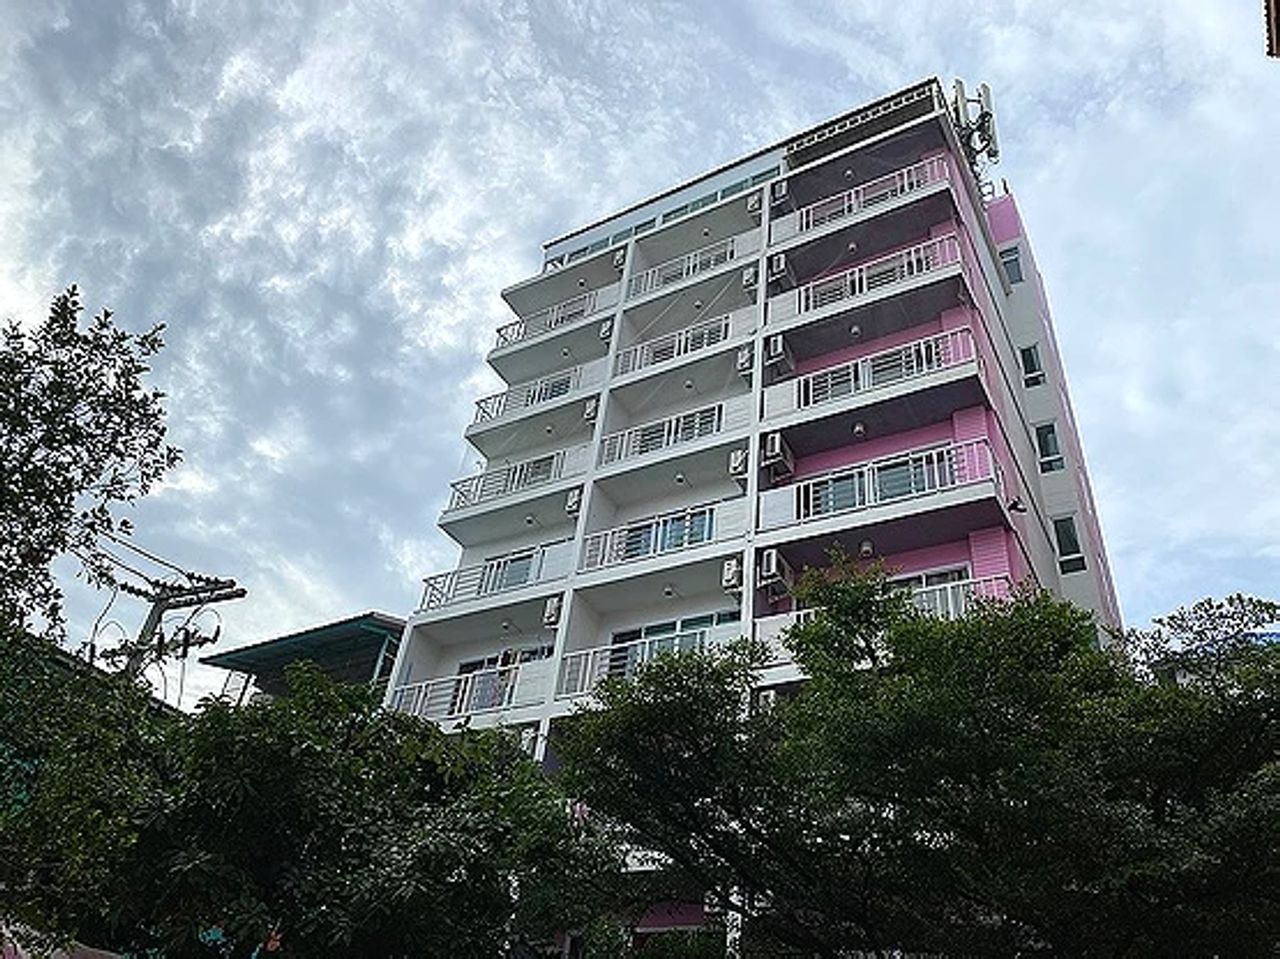 รูปภาพเพิ่มเติม บ้านสีชมพู-หอหญิง - Baan-See-Chompoo - ลำดับที่ 7